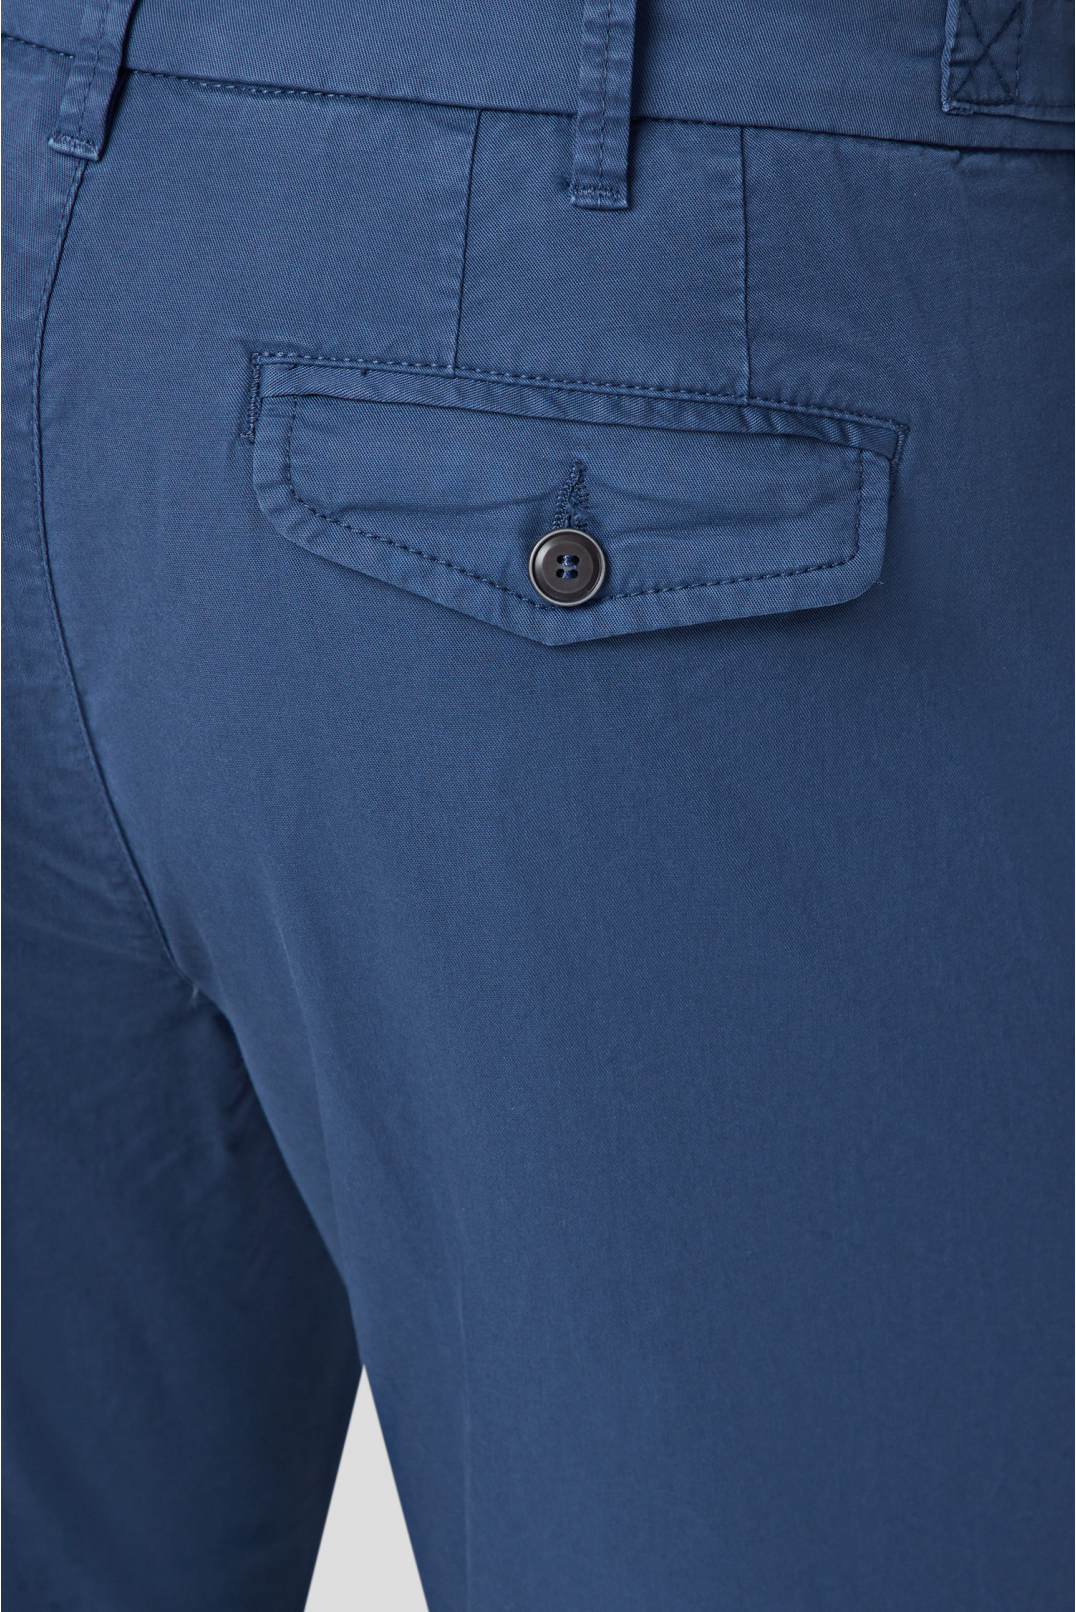 Чоловічі сині шорти - 4